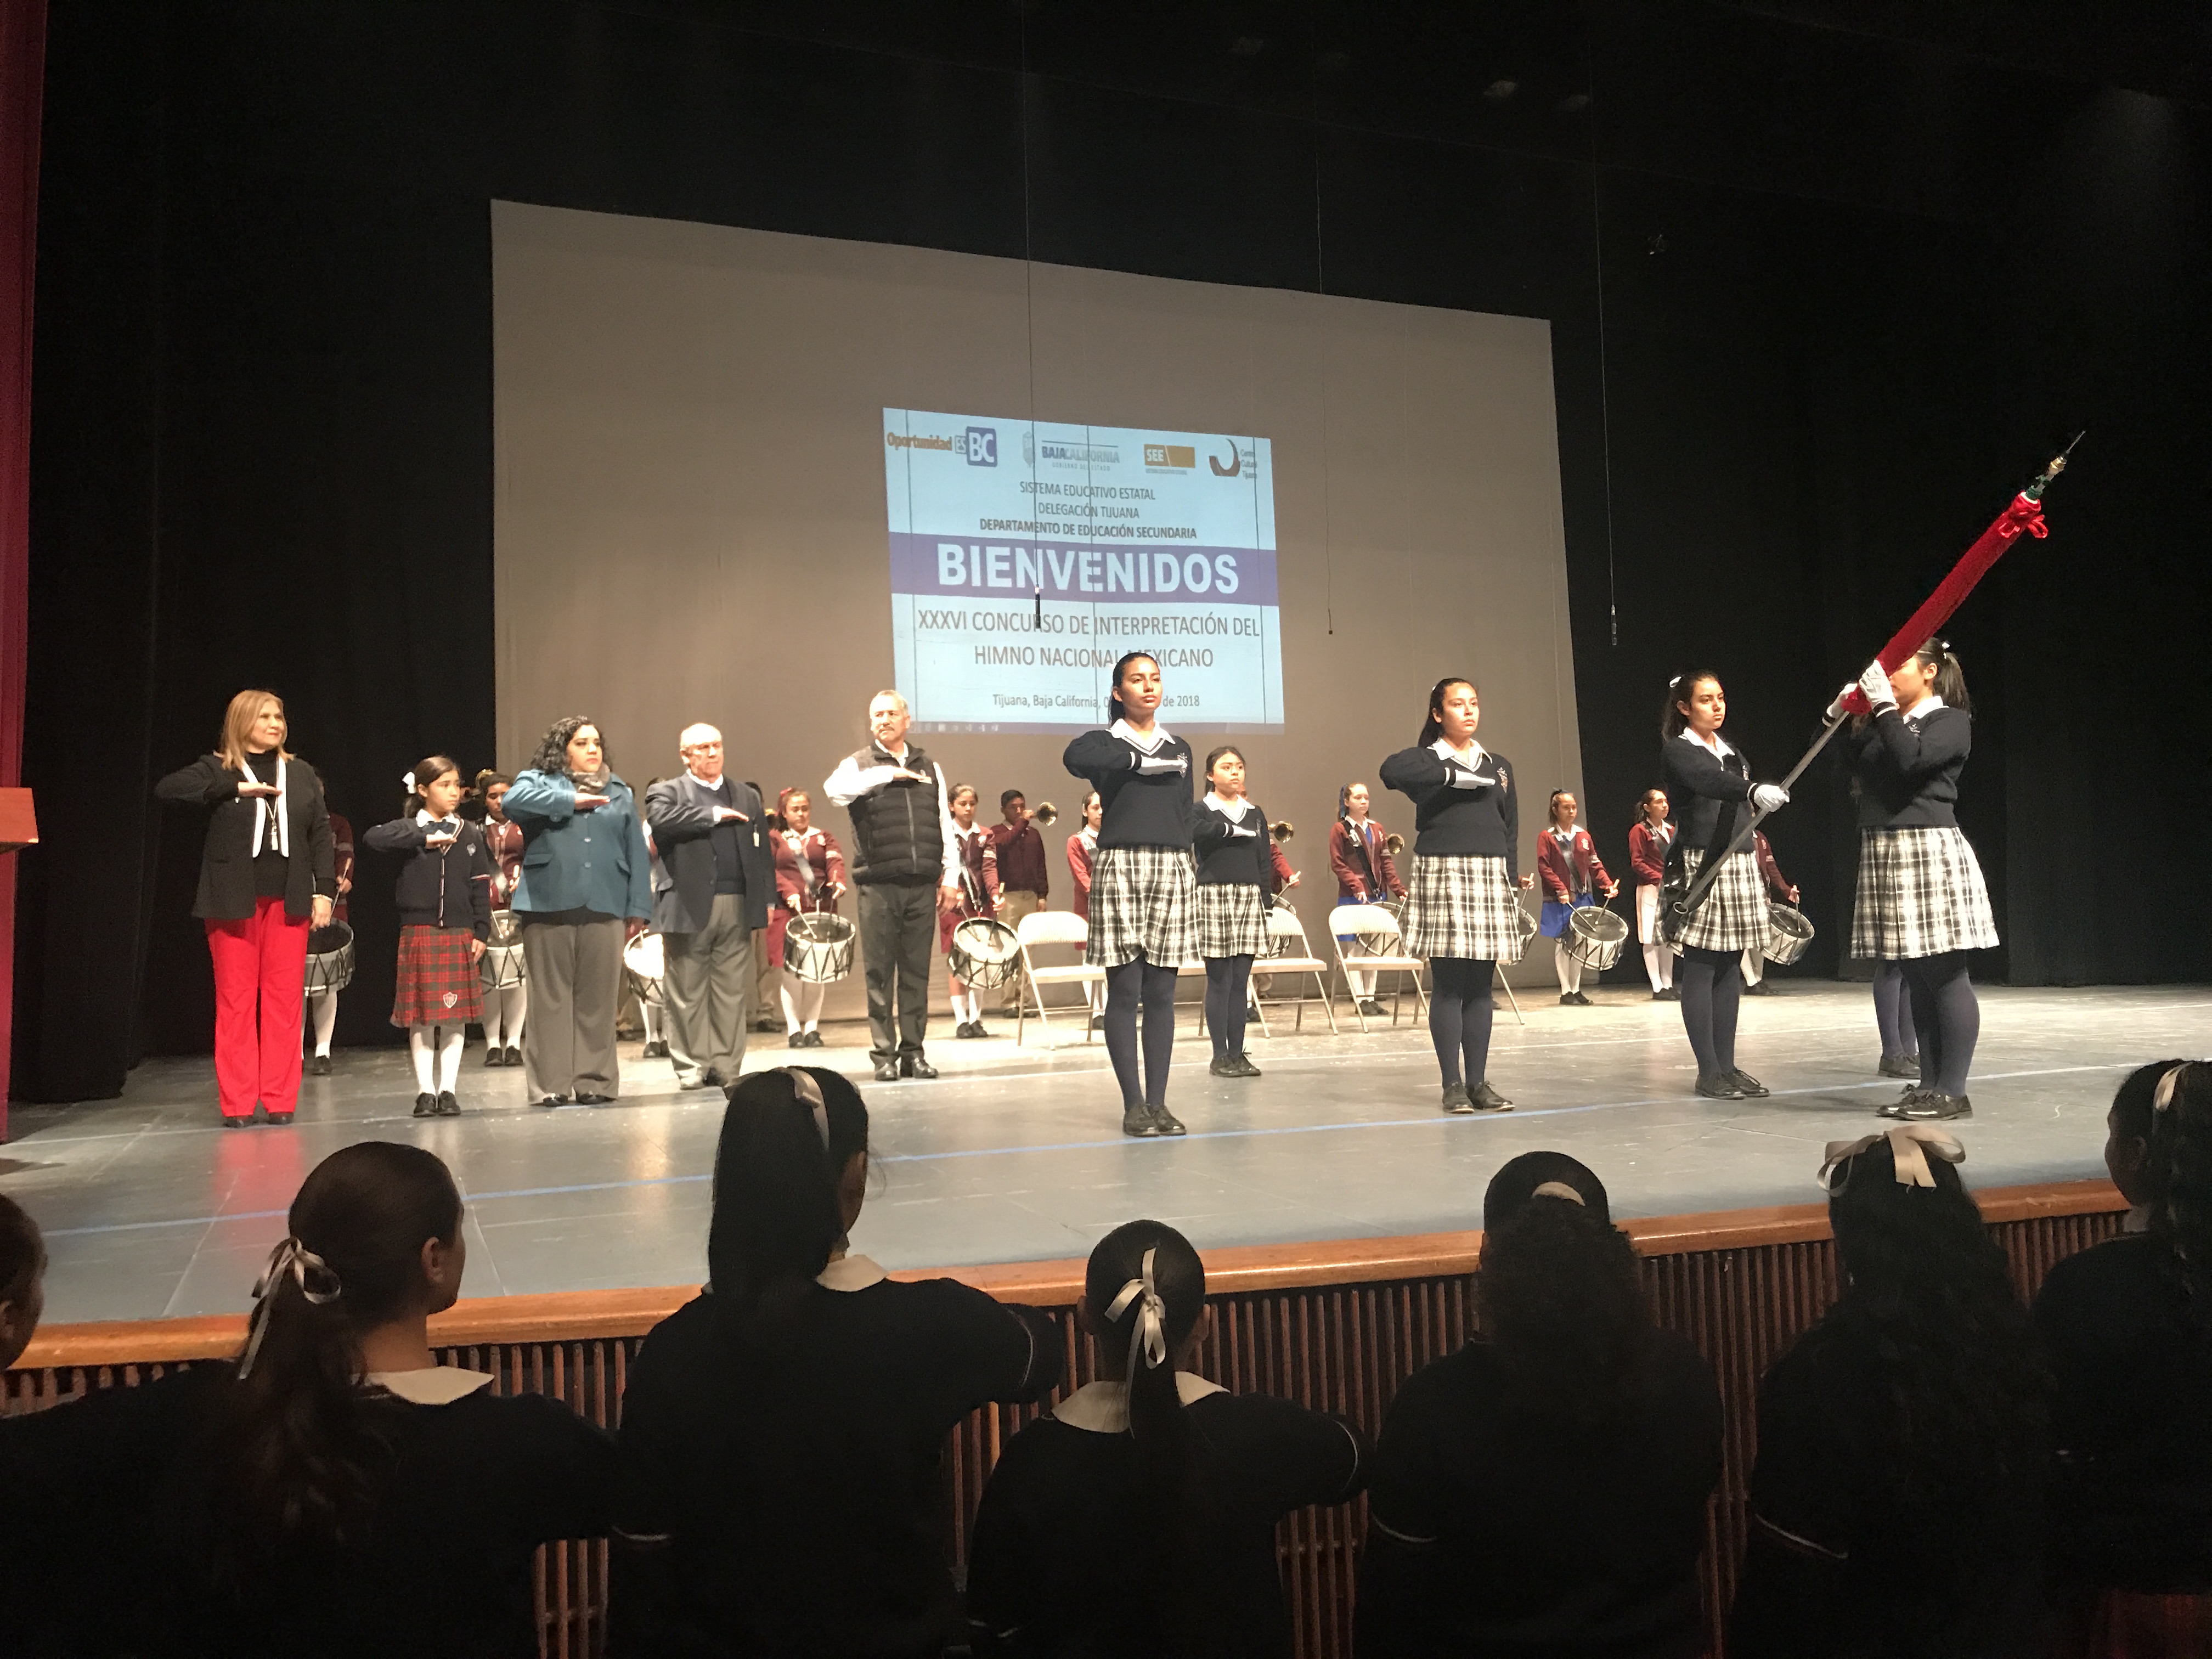 Secundarias de Tijuana concursan en interpretación del Himno Nacional Mexicano